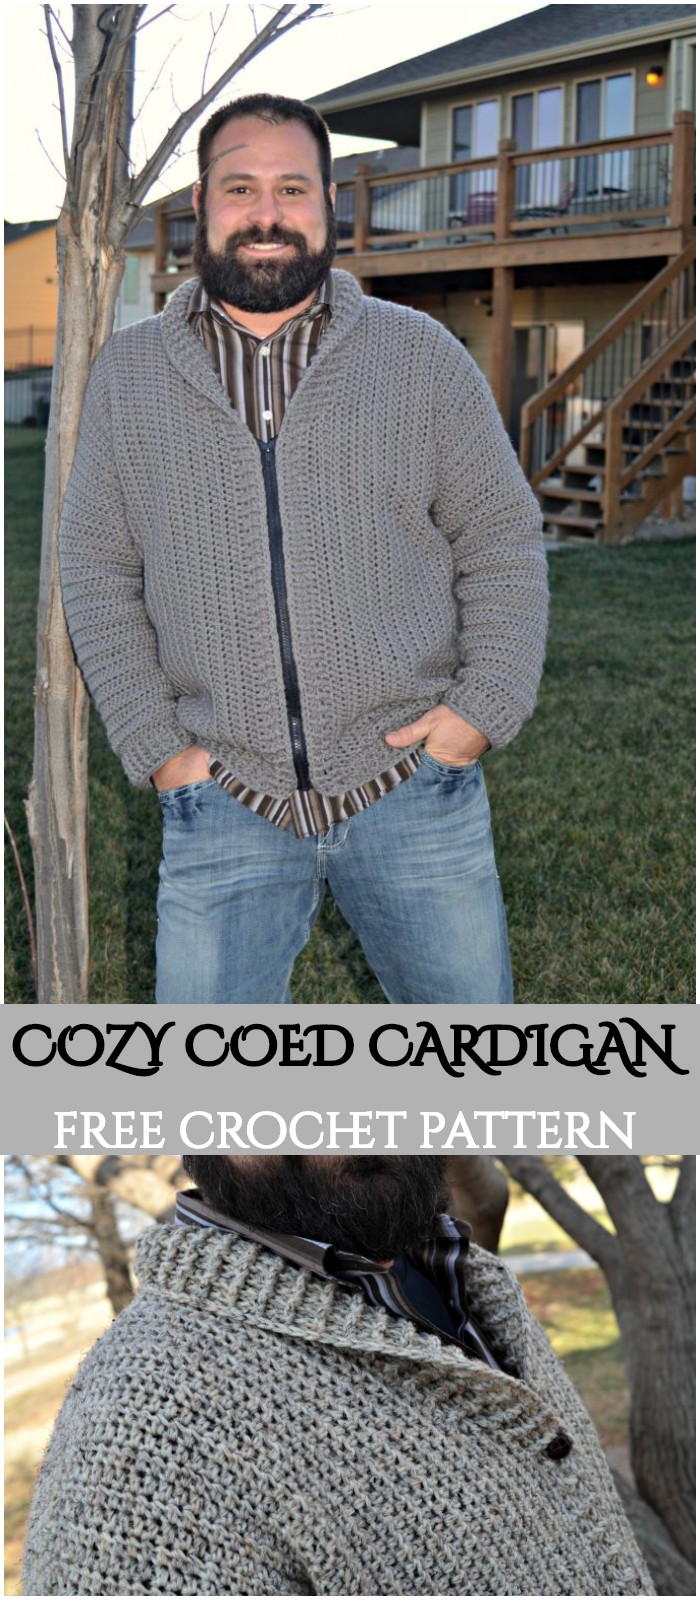 Crochet Cozy Coed Cardigan